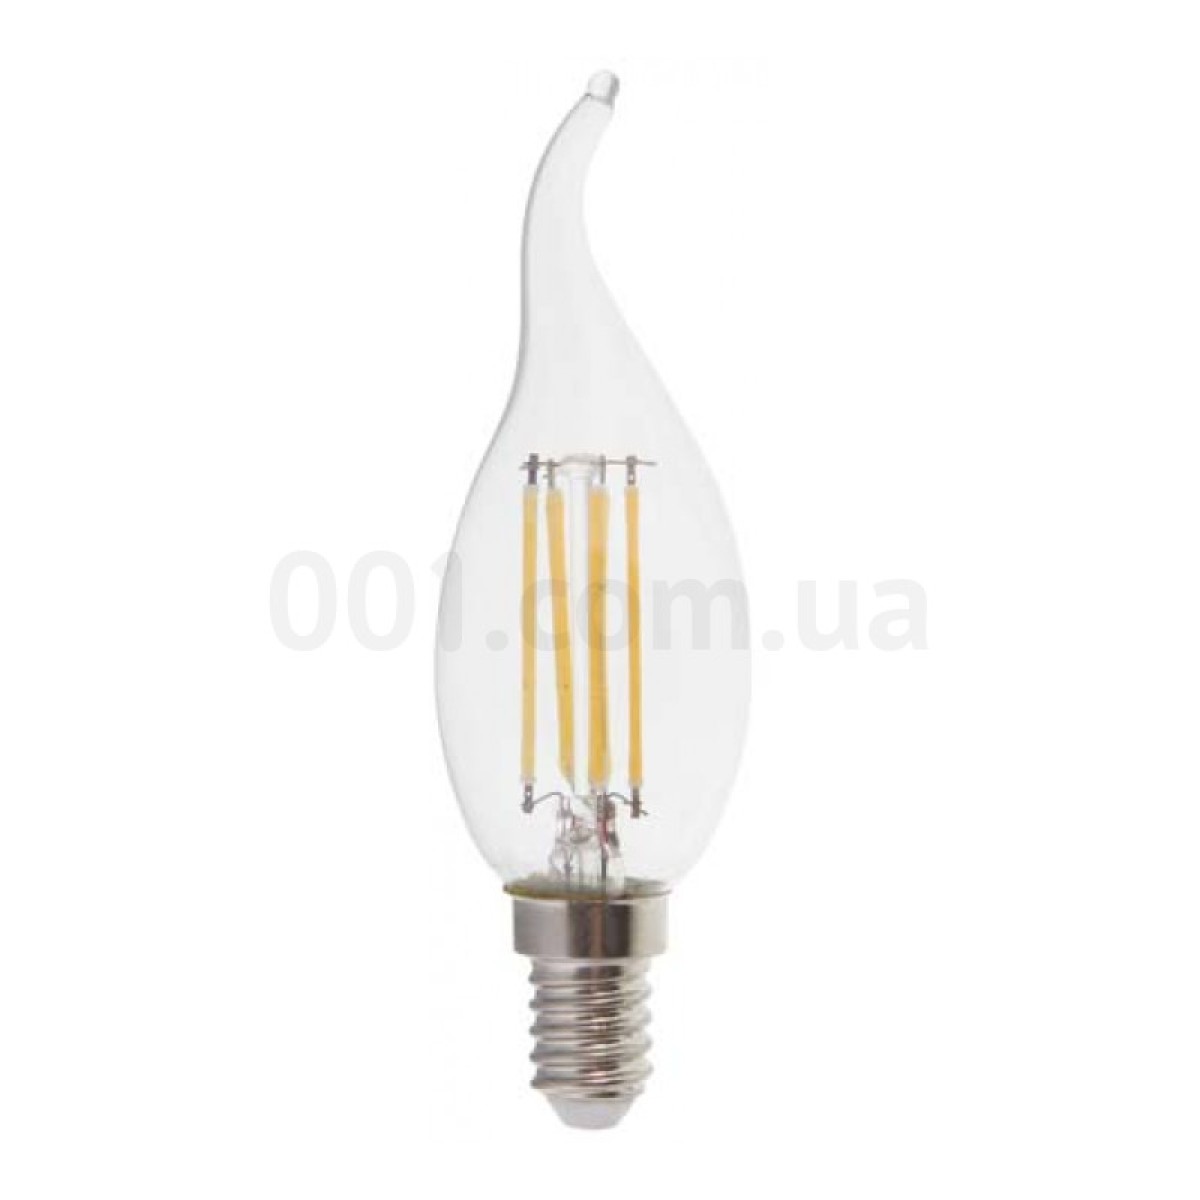 Світлодіодна лампа LB-159 CF37 (свічка на вітрі) філамент 6Вт 2700K E14, Feron 98_98.jpg